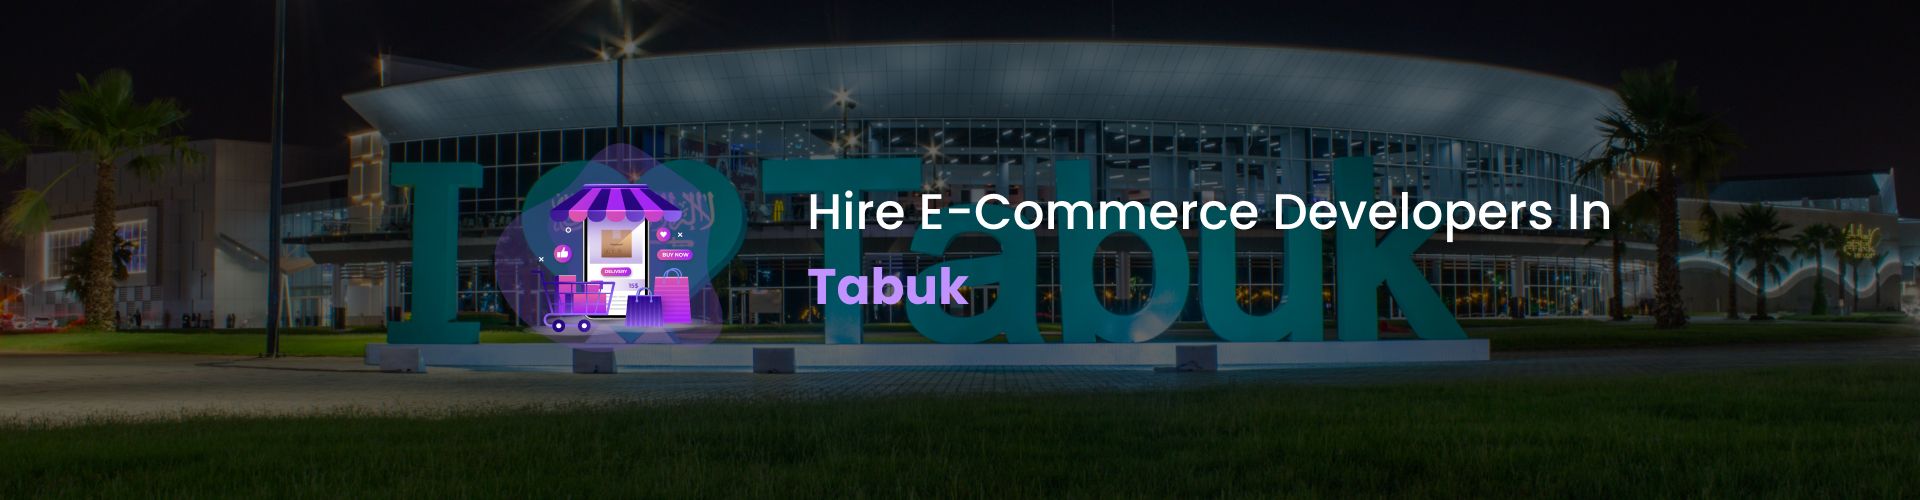 ecommerce developers tabuk